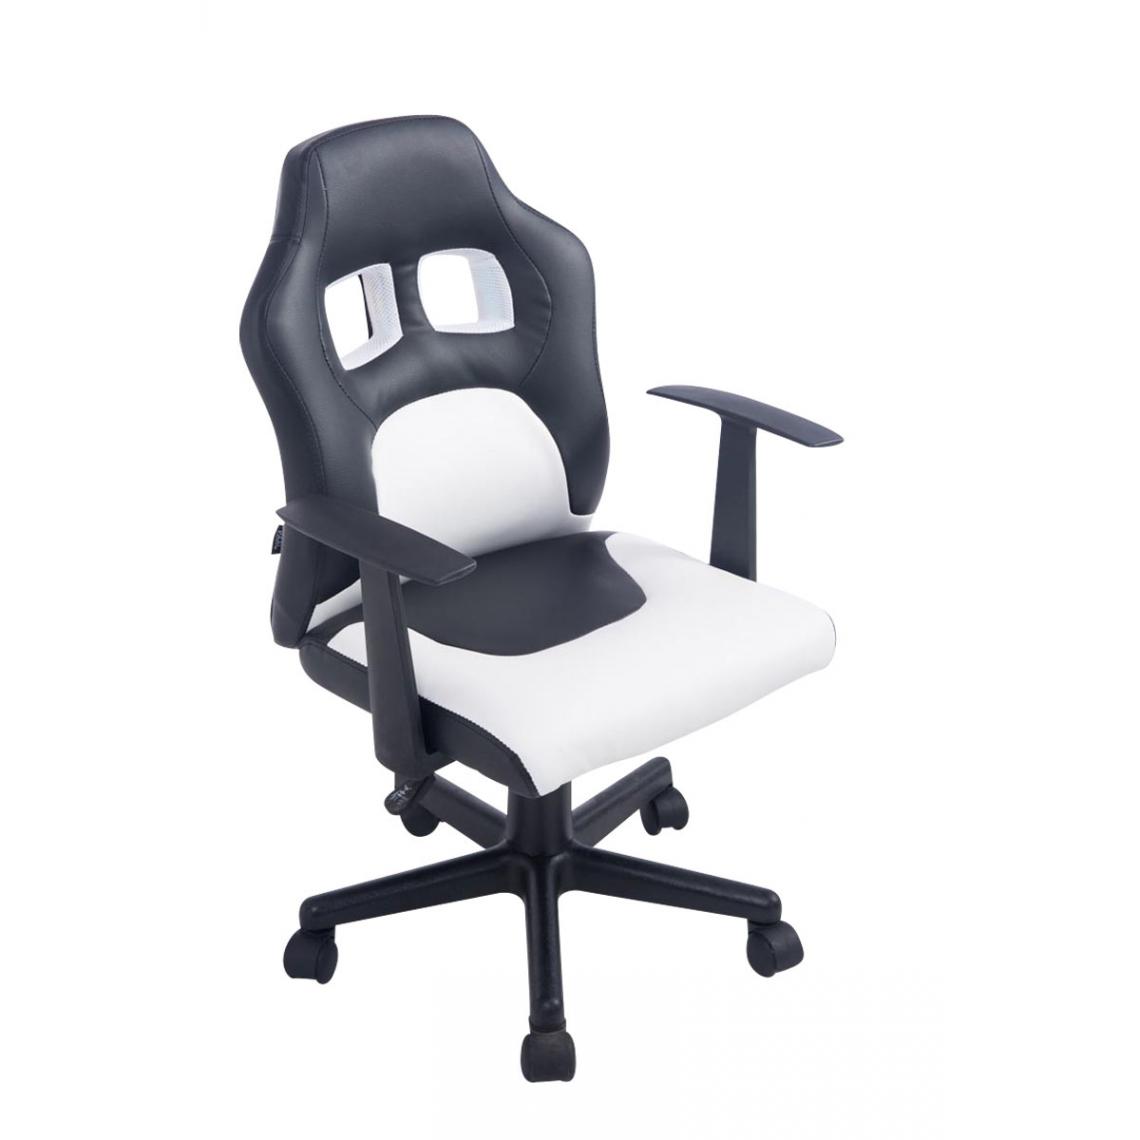 Icaverne - Joli Chaise de bureau enfant categorie Vaduz couleur noir et blanc - Chaises